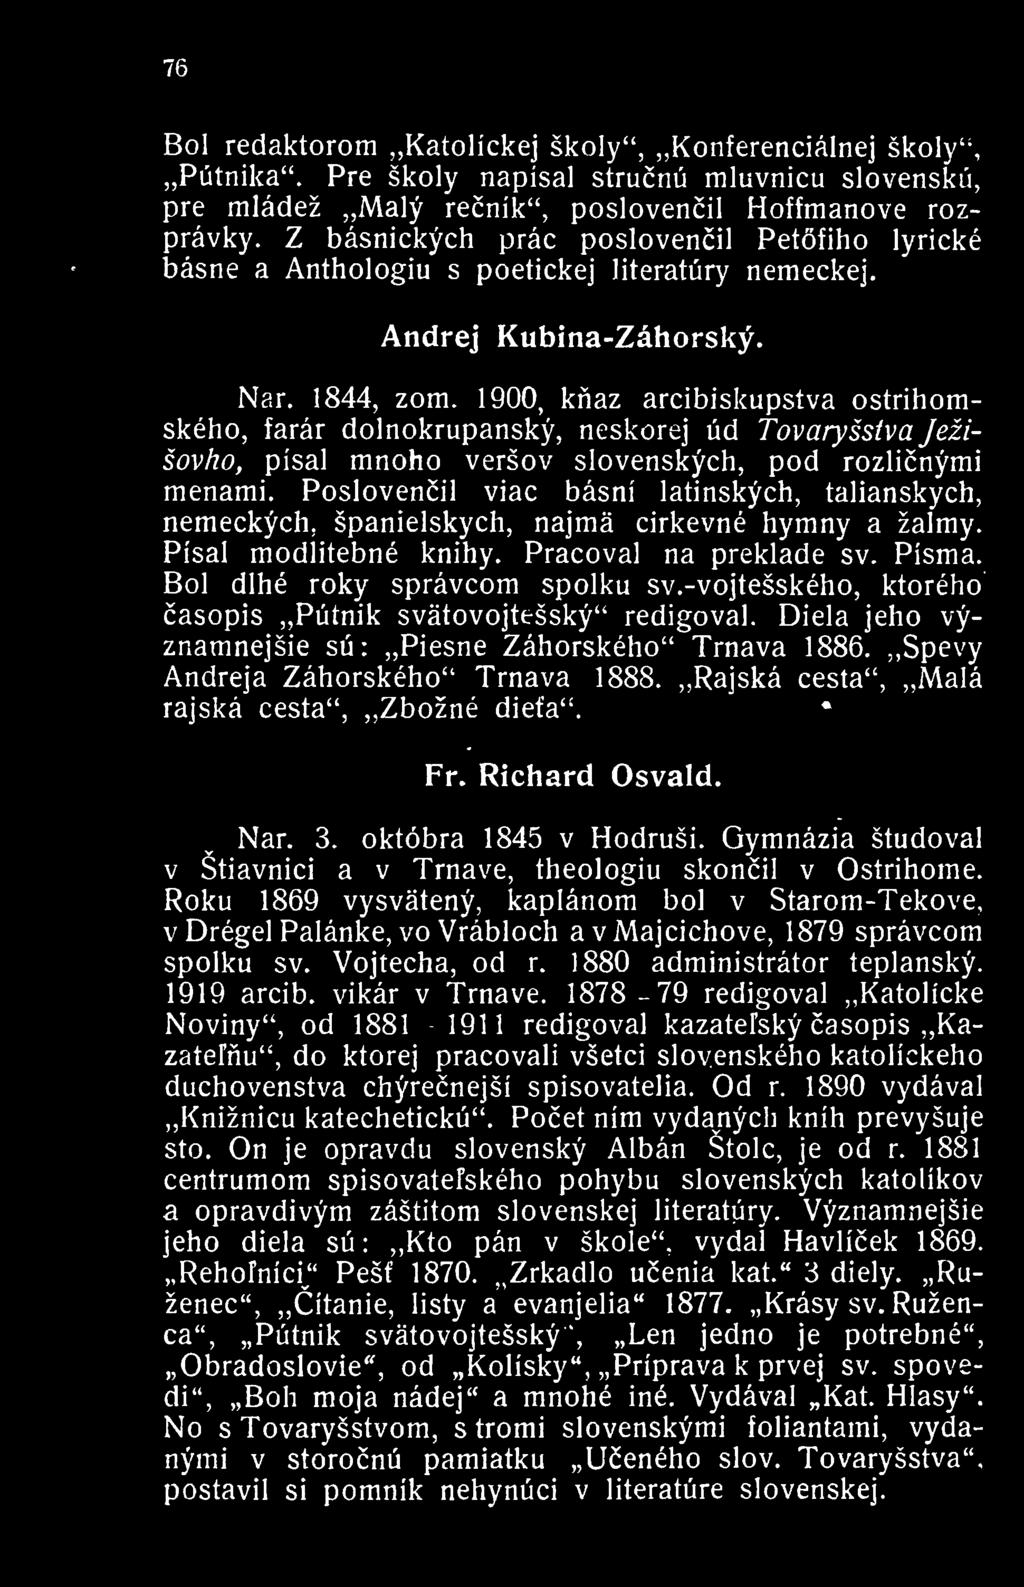 1900, knaz arcibiskupstva ostrihomskeho, farar dolnokrupansky, neskorej ud Tovaryssiva Jezisovho, pisal mnoho versov slovenskych, pod rozlicnymi menami.